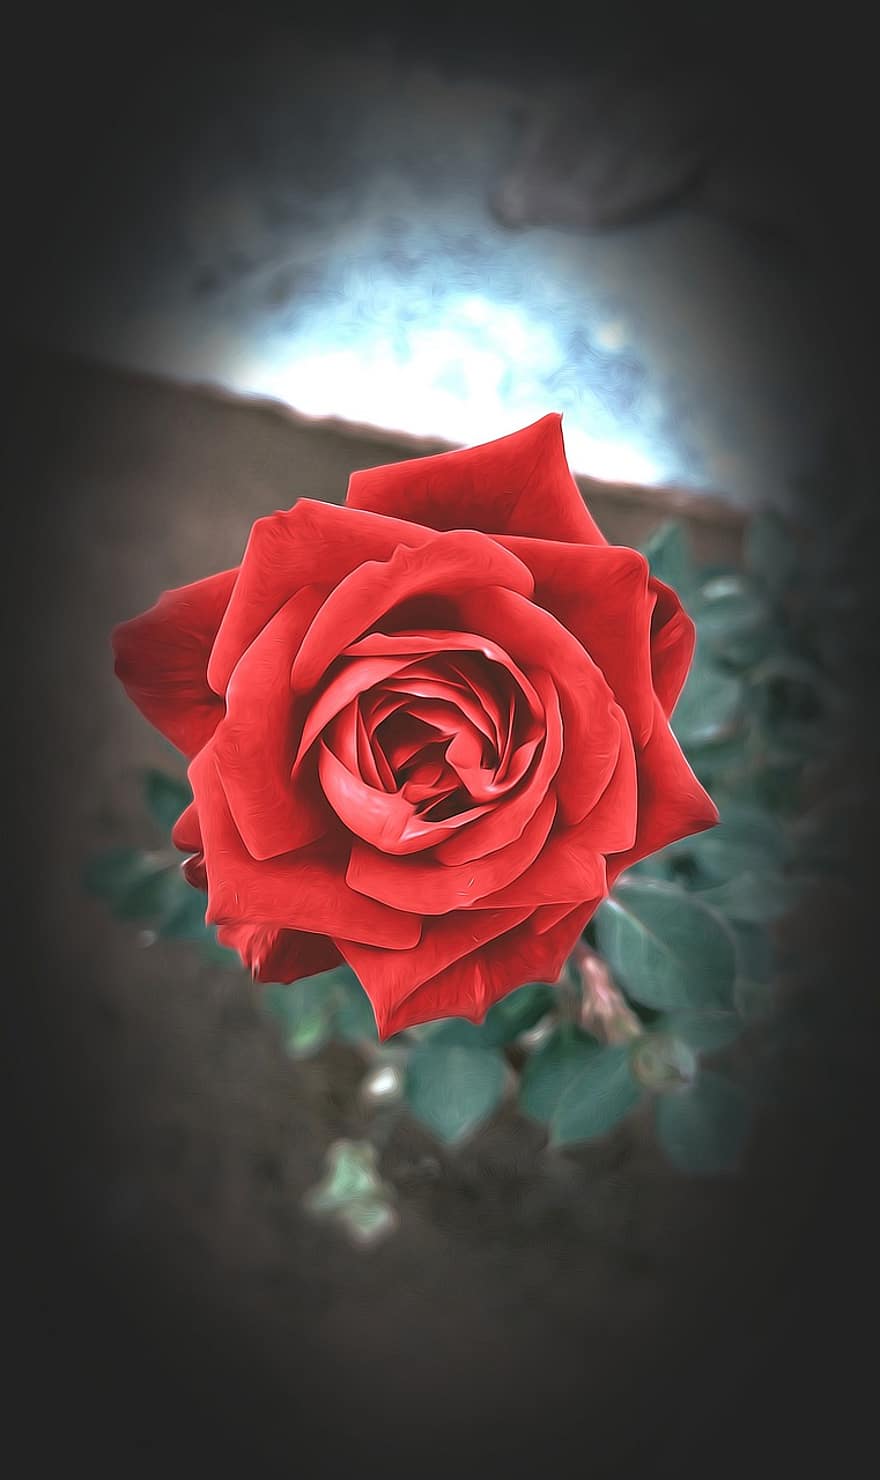 roos, bloem, fabriek, rode roos, rode bloem, bloemblaadjes, bloeien, bloemblad, detailopname, romance, blad